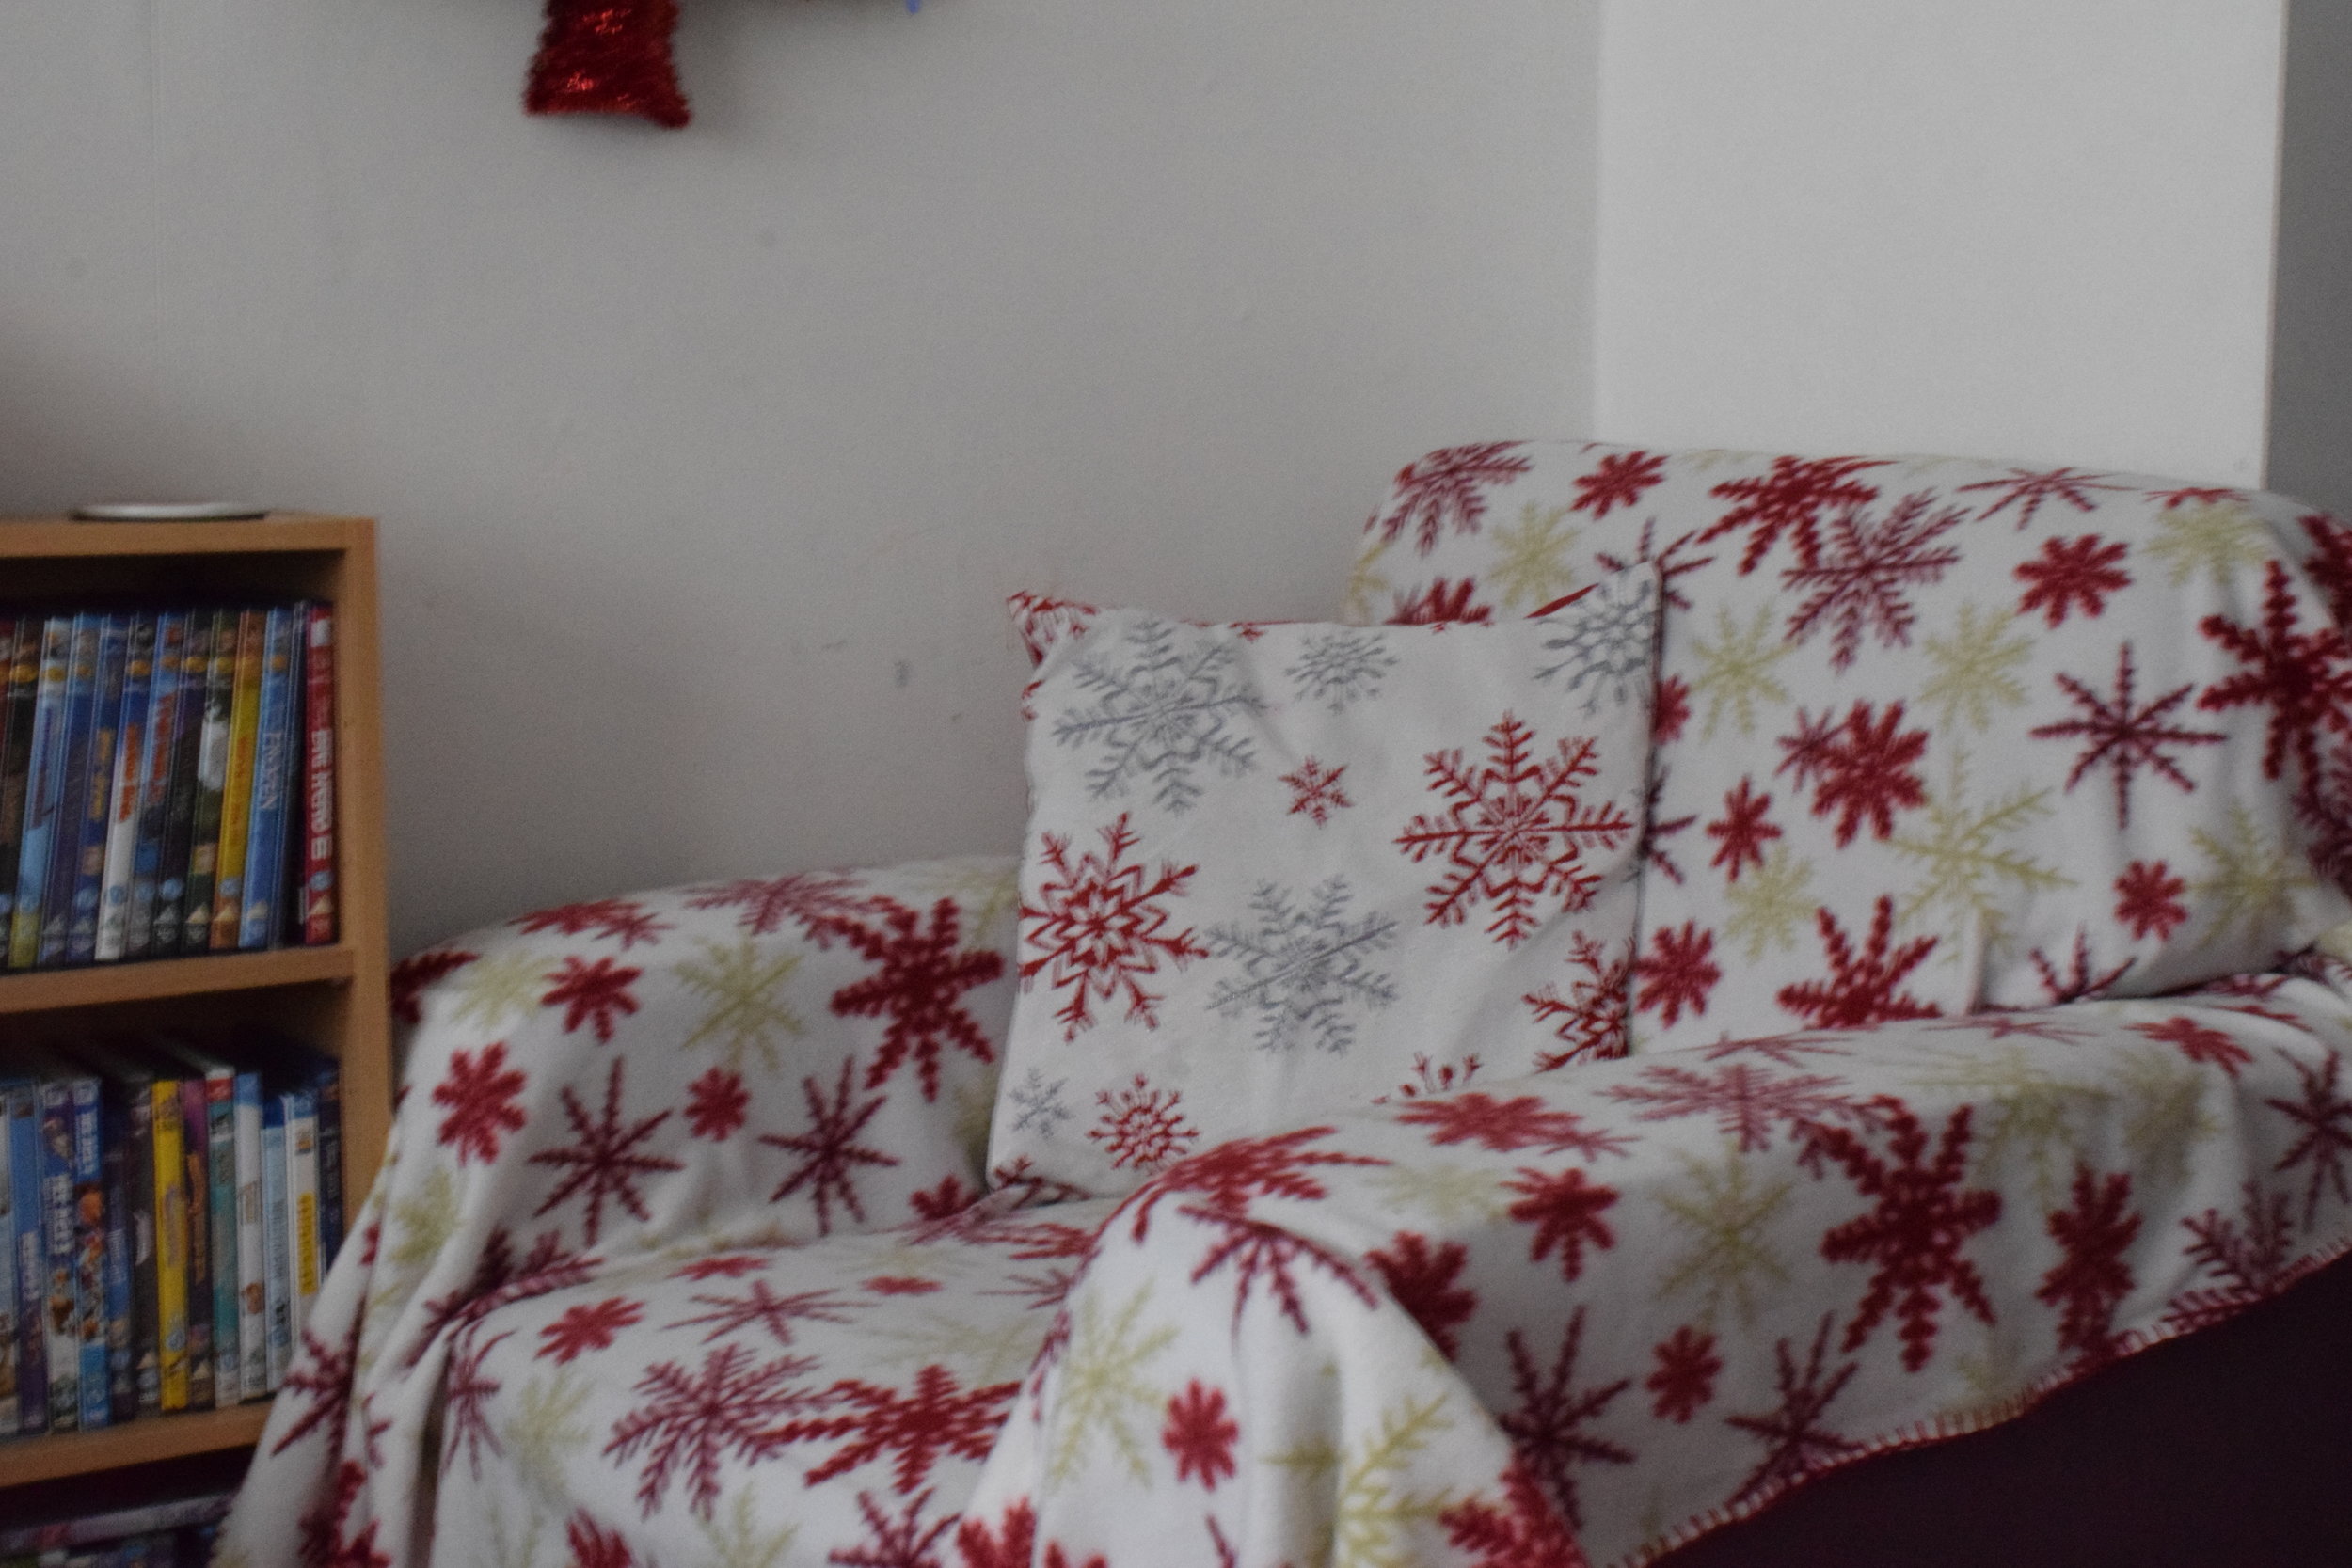 Christmas snowflake arm chair